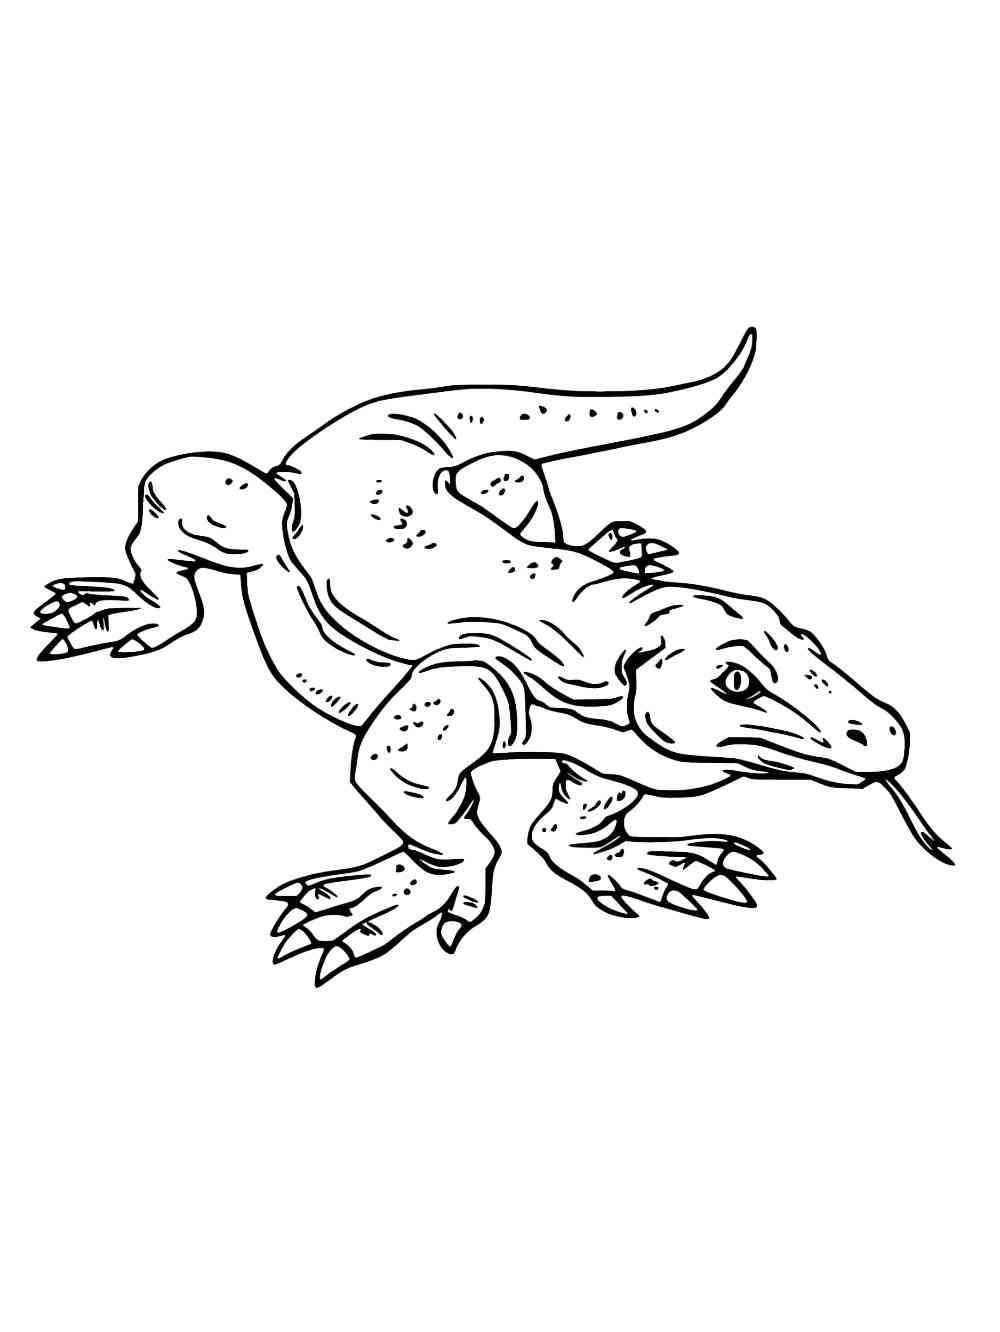 Walking Komodo Dragon coloring page